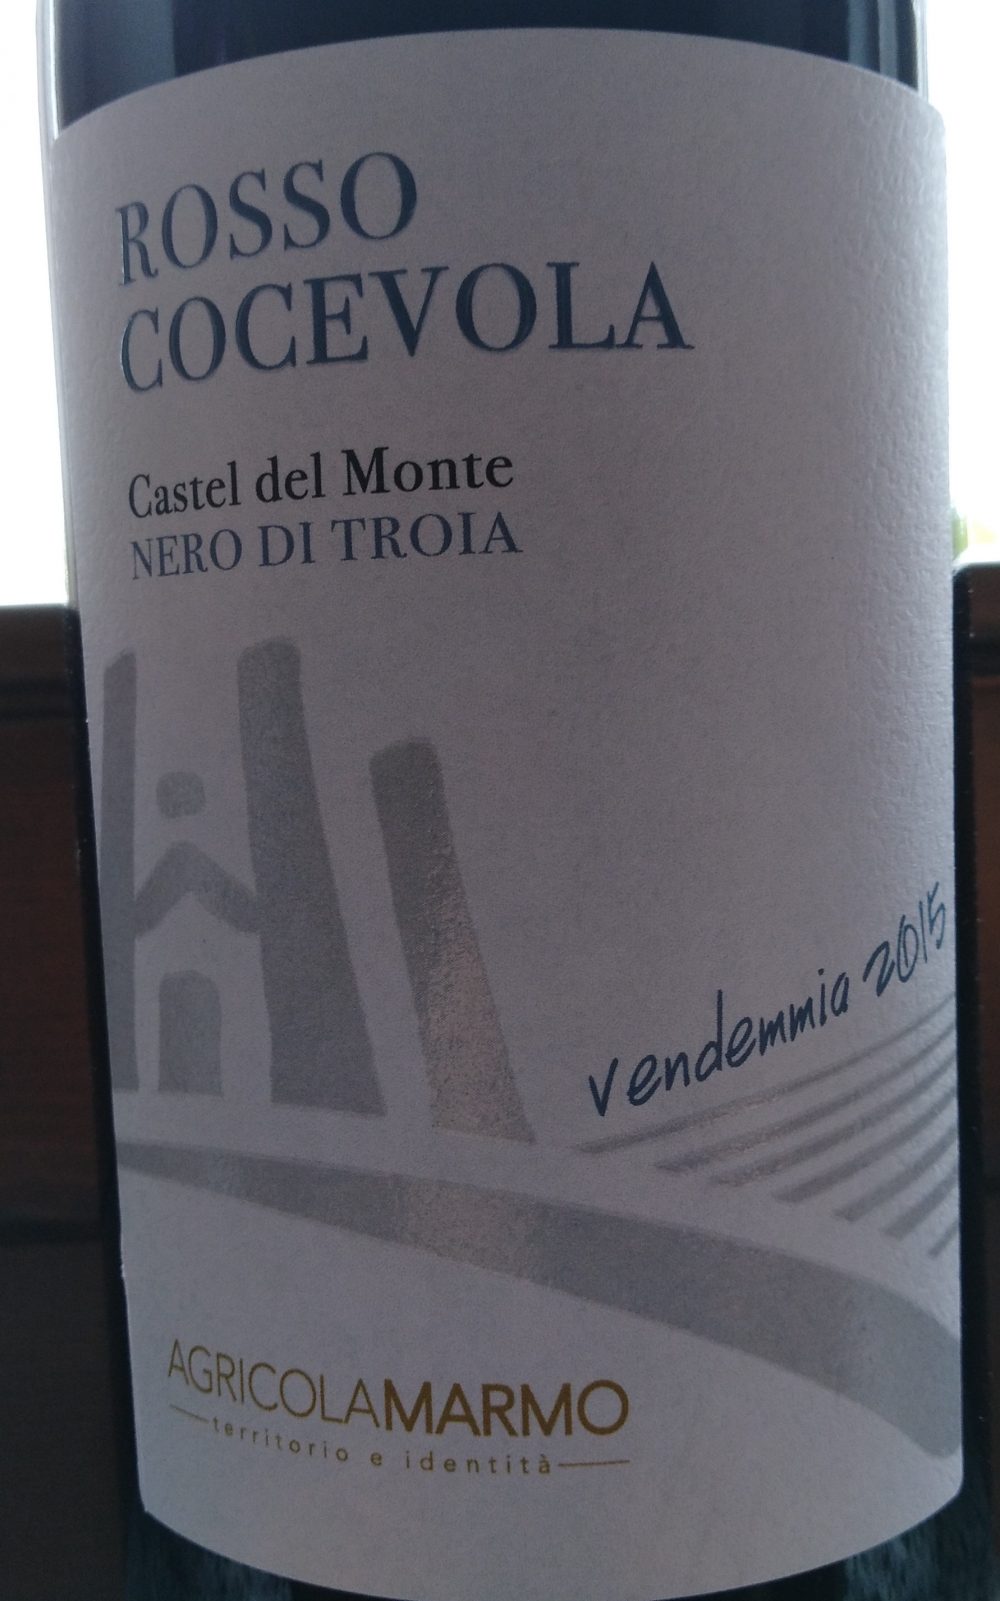 Rosso Cocevola Nero di Troia Castel del Monte Doc 2015 Agricola Marmo